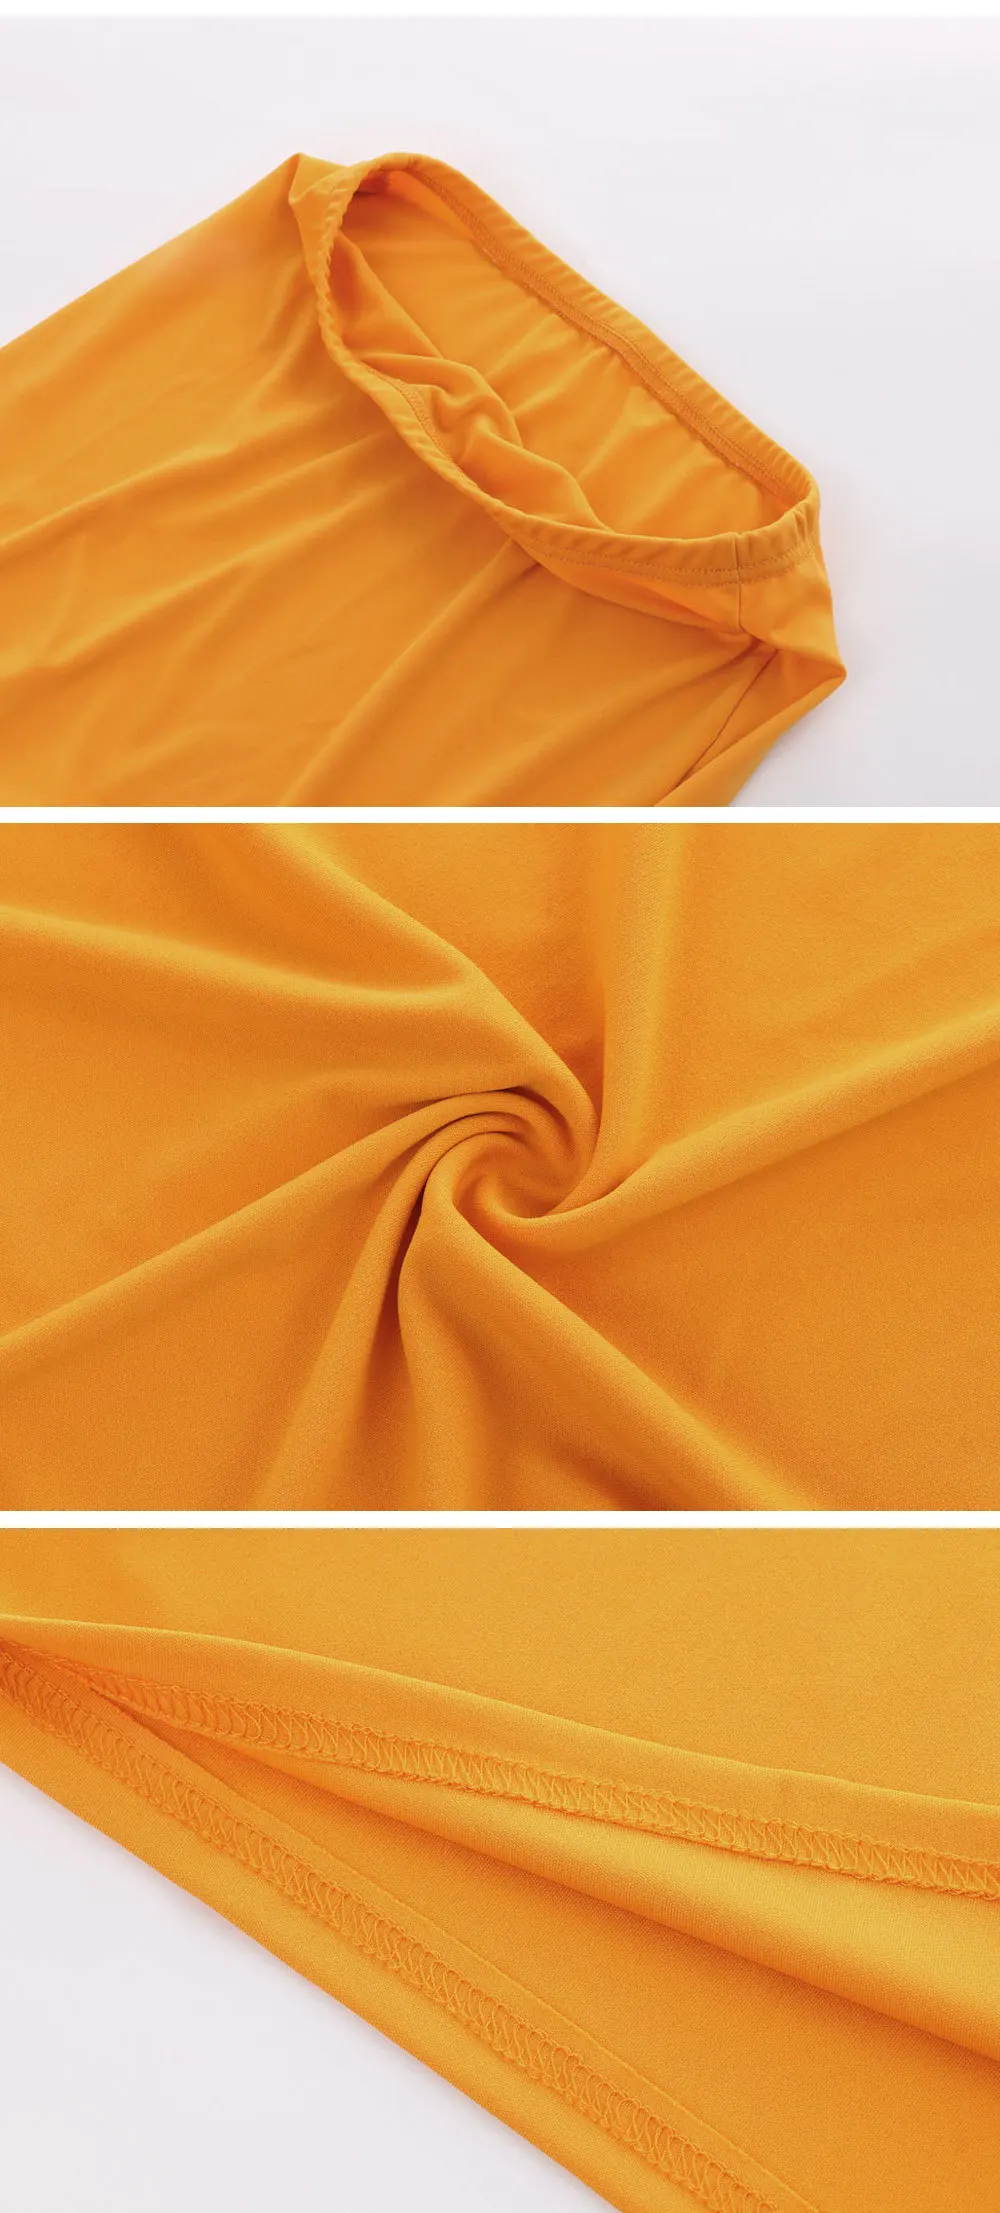 ANJAMANOR желтое Макси облегающее платье сексуальное Женский комплект 2 шт. с открытыми плечами короткий топ и юбка Клубные наряды одинаковые комплекты D34-AZ50